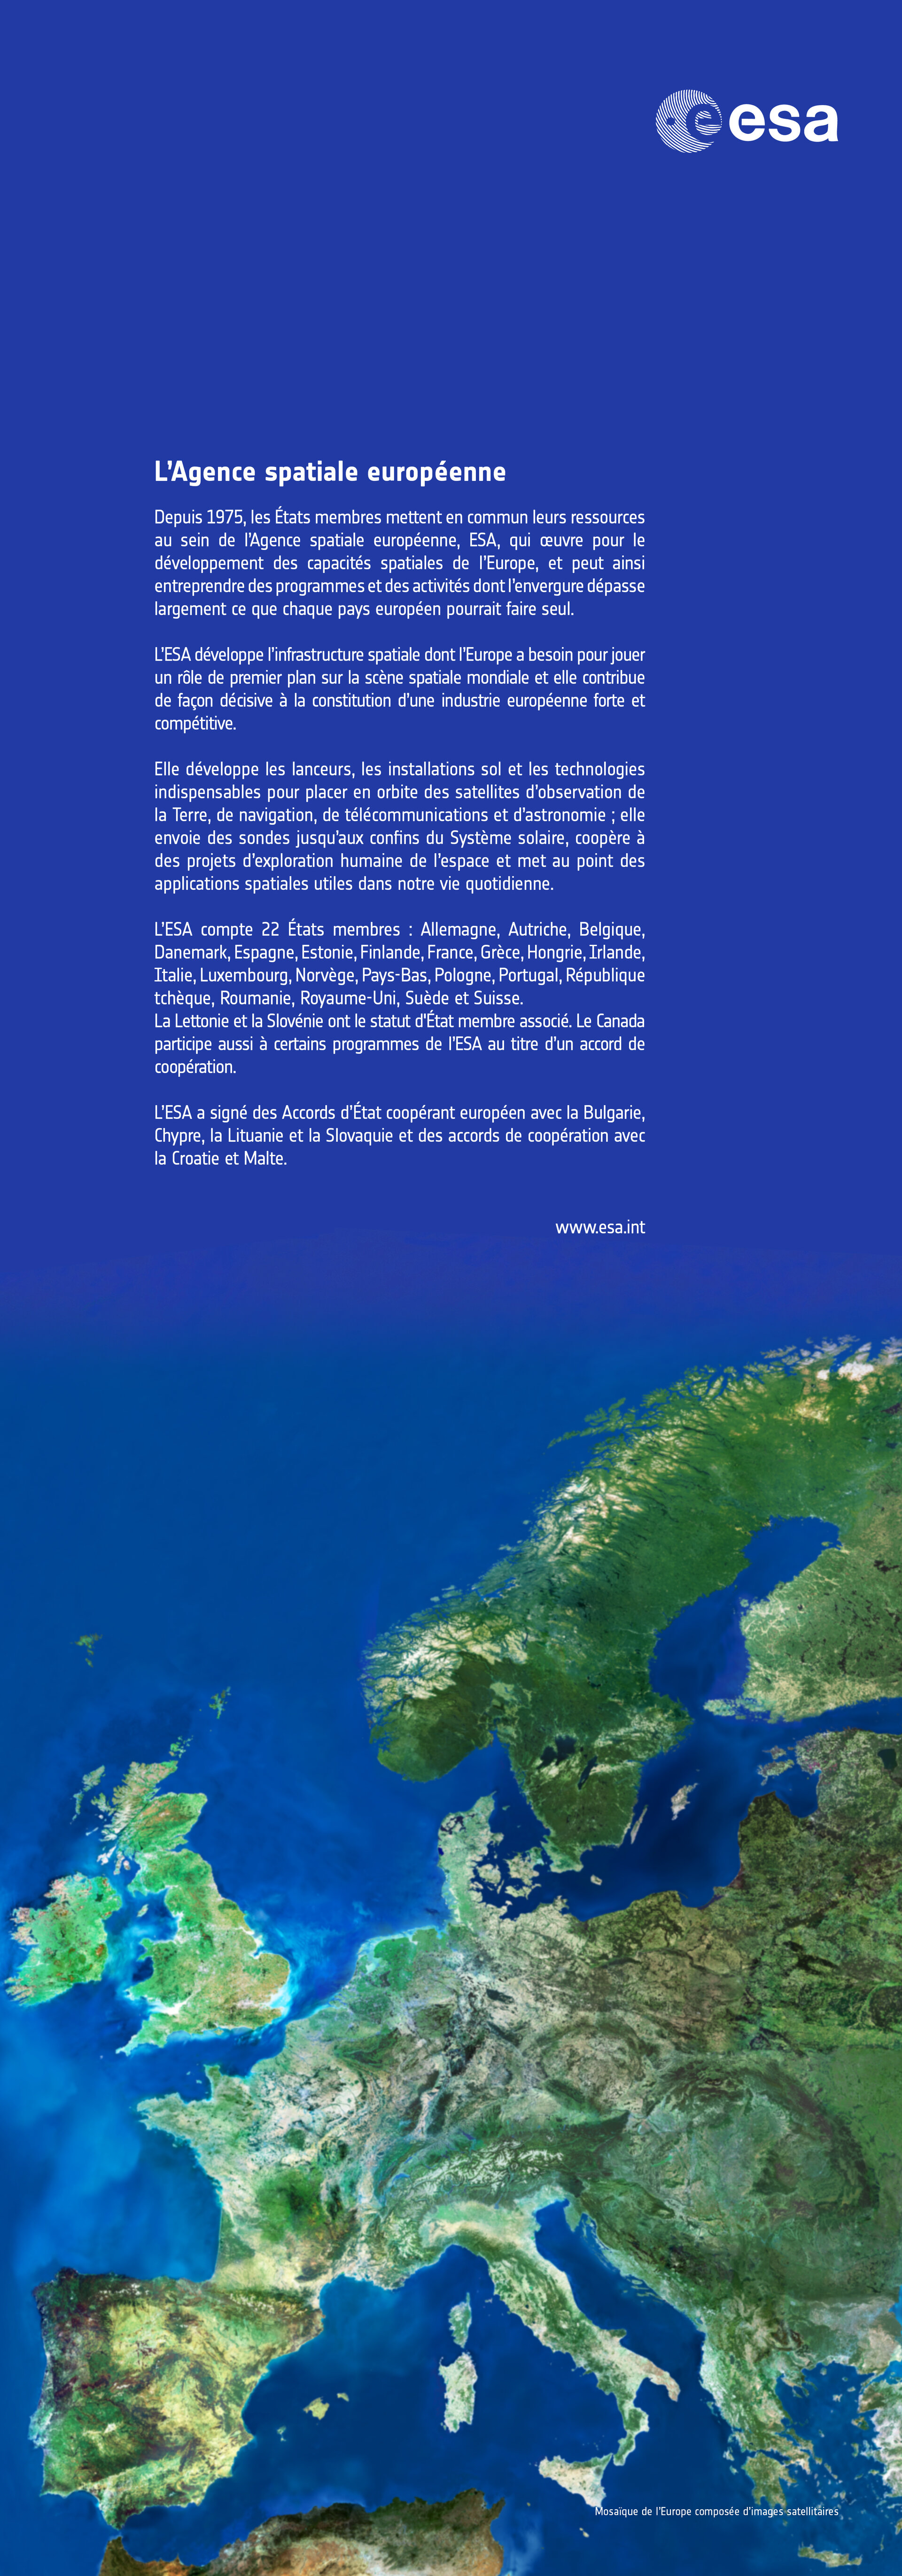 Mosaïque de l'Europe composée d'images satellitaires